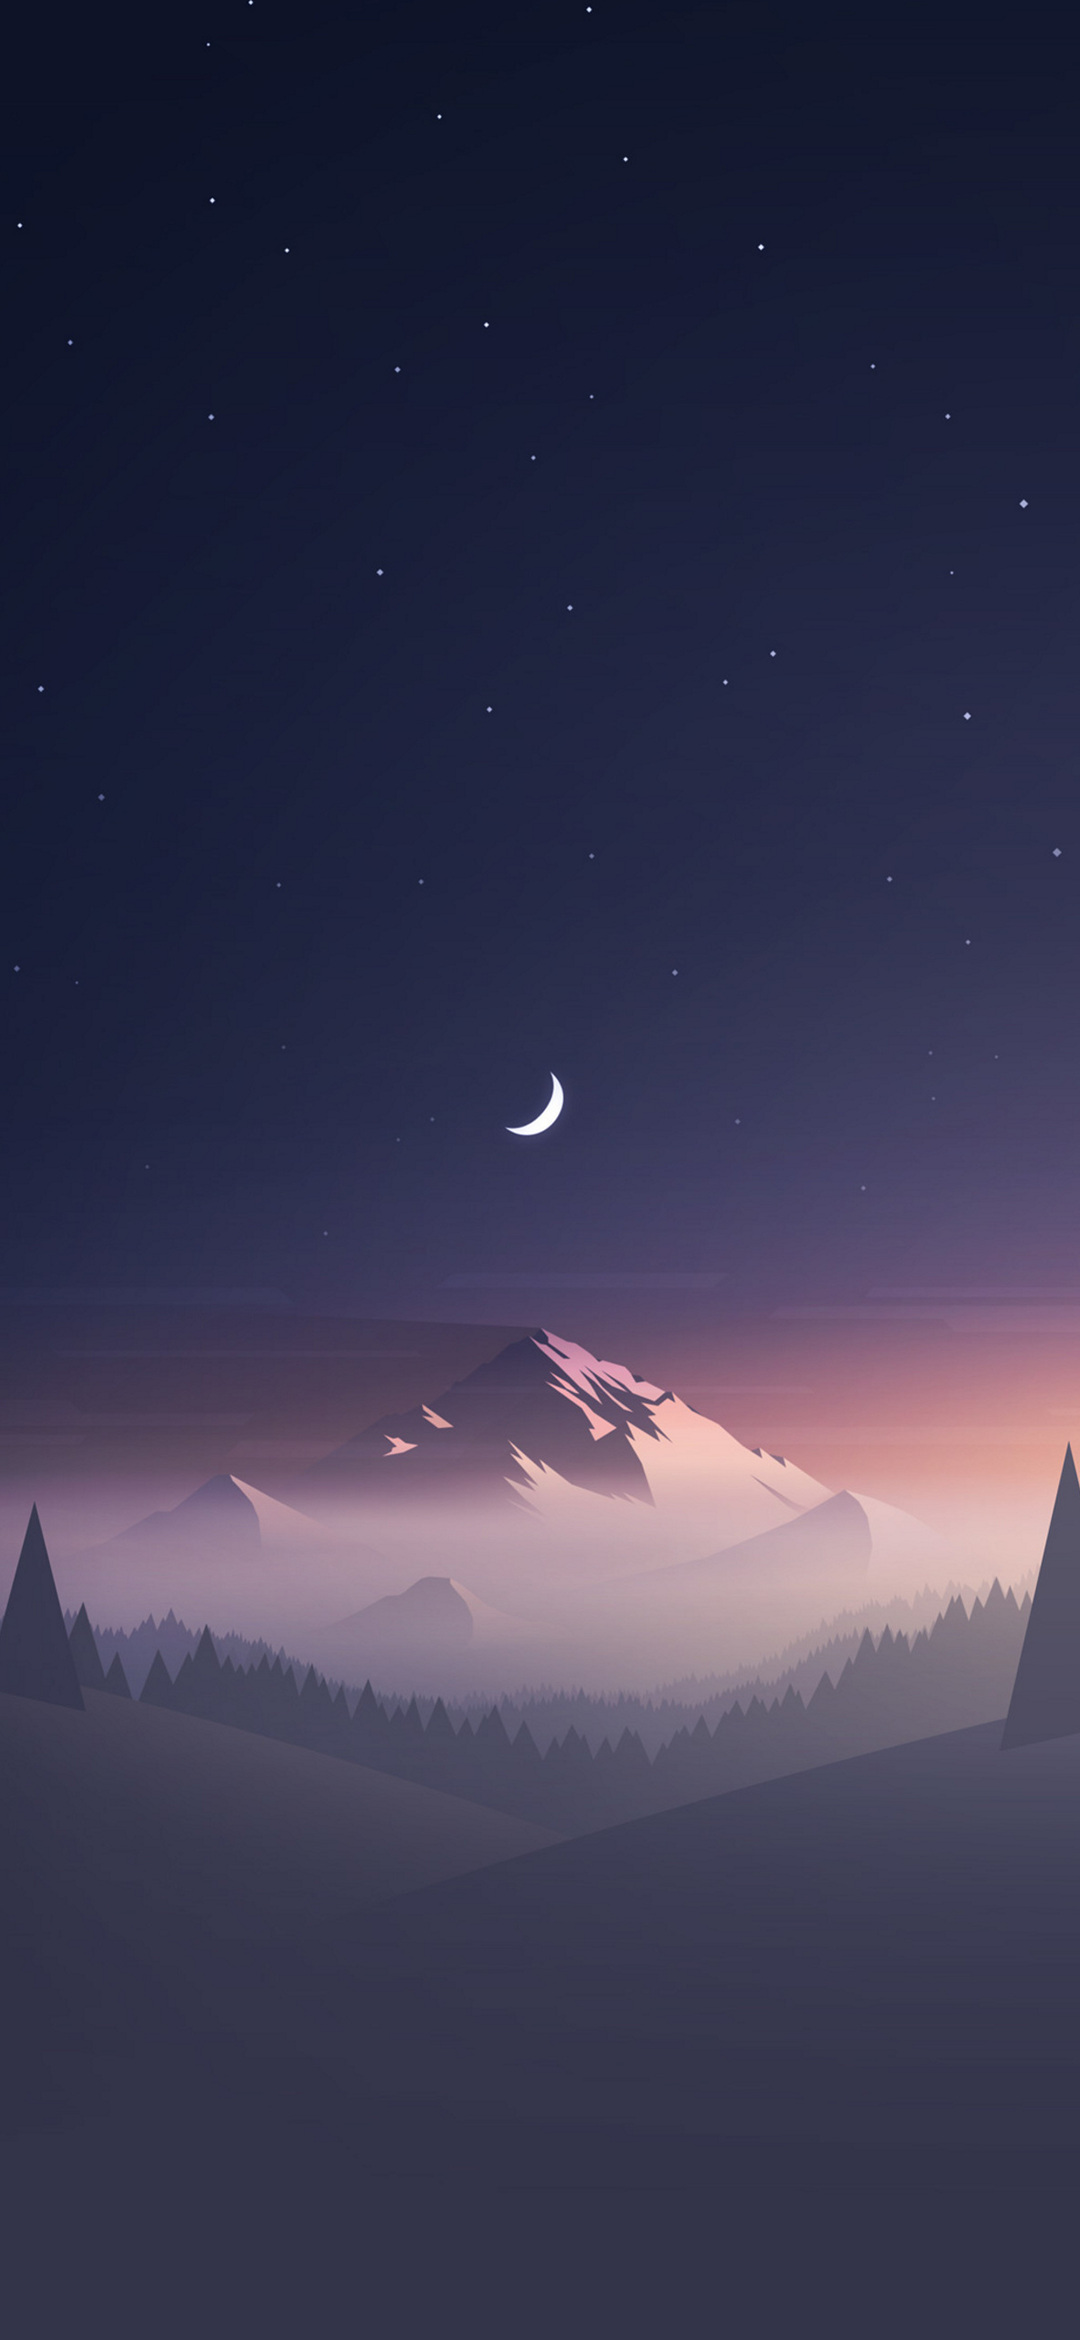 綺麗な星空と三日月と雪山のイラスト Google Pixel 5 Android スマホ壁紙 待ち受け スマラン